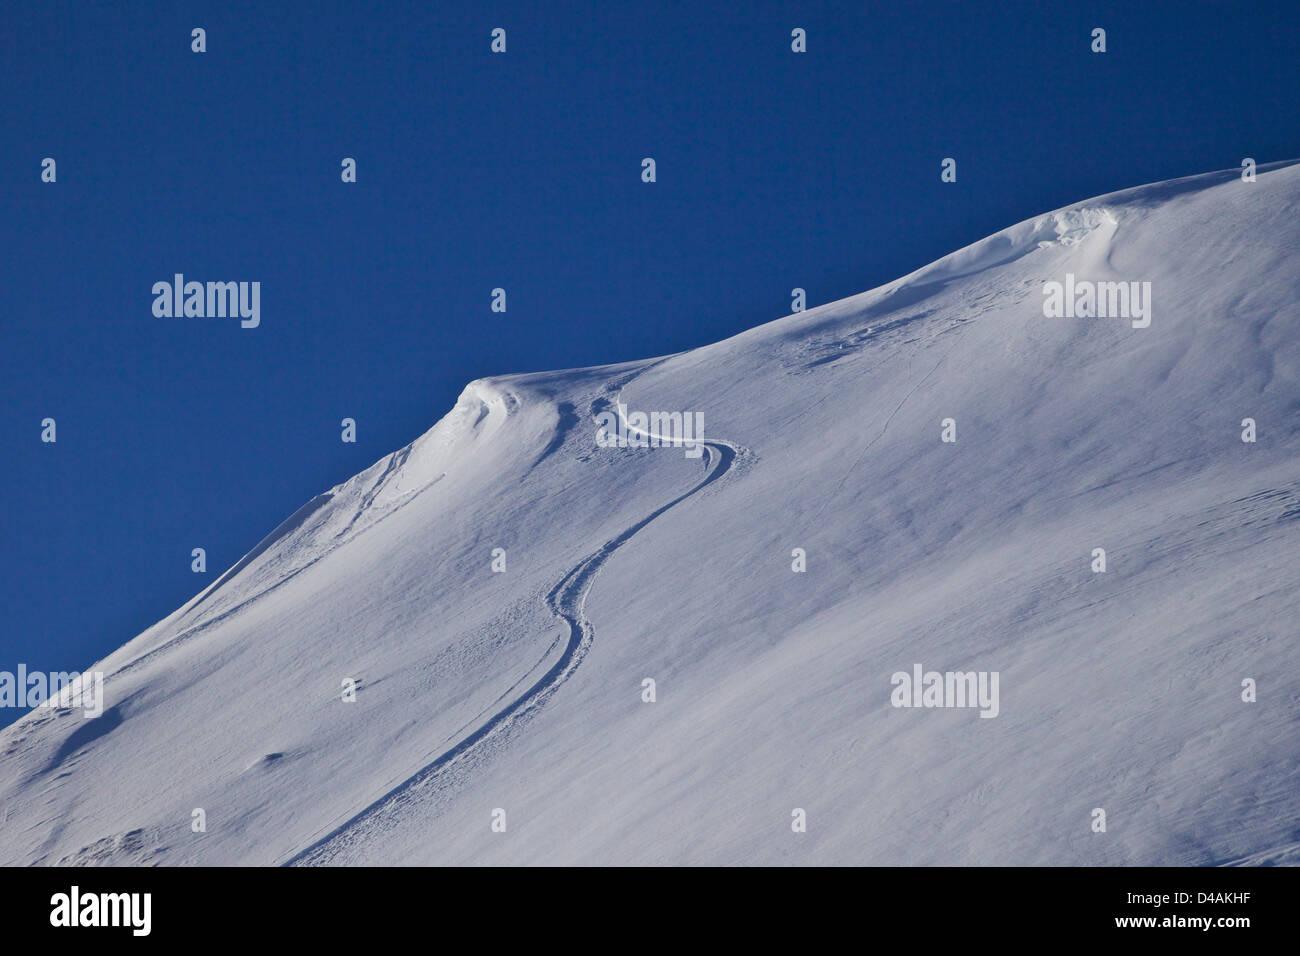 Piste da sci in neve profonda, La Plagne, Francia, Europa Foto Stock